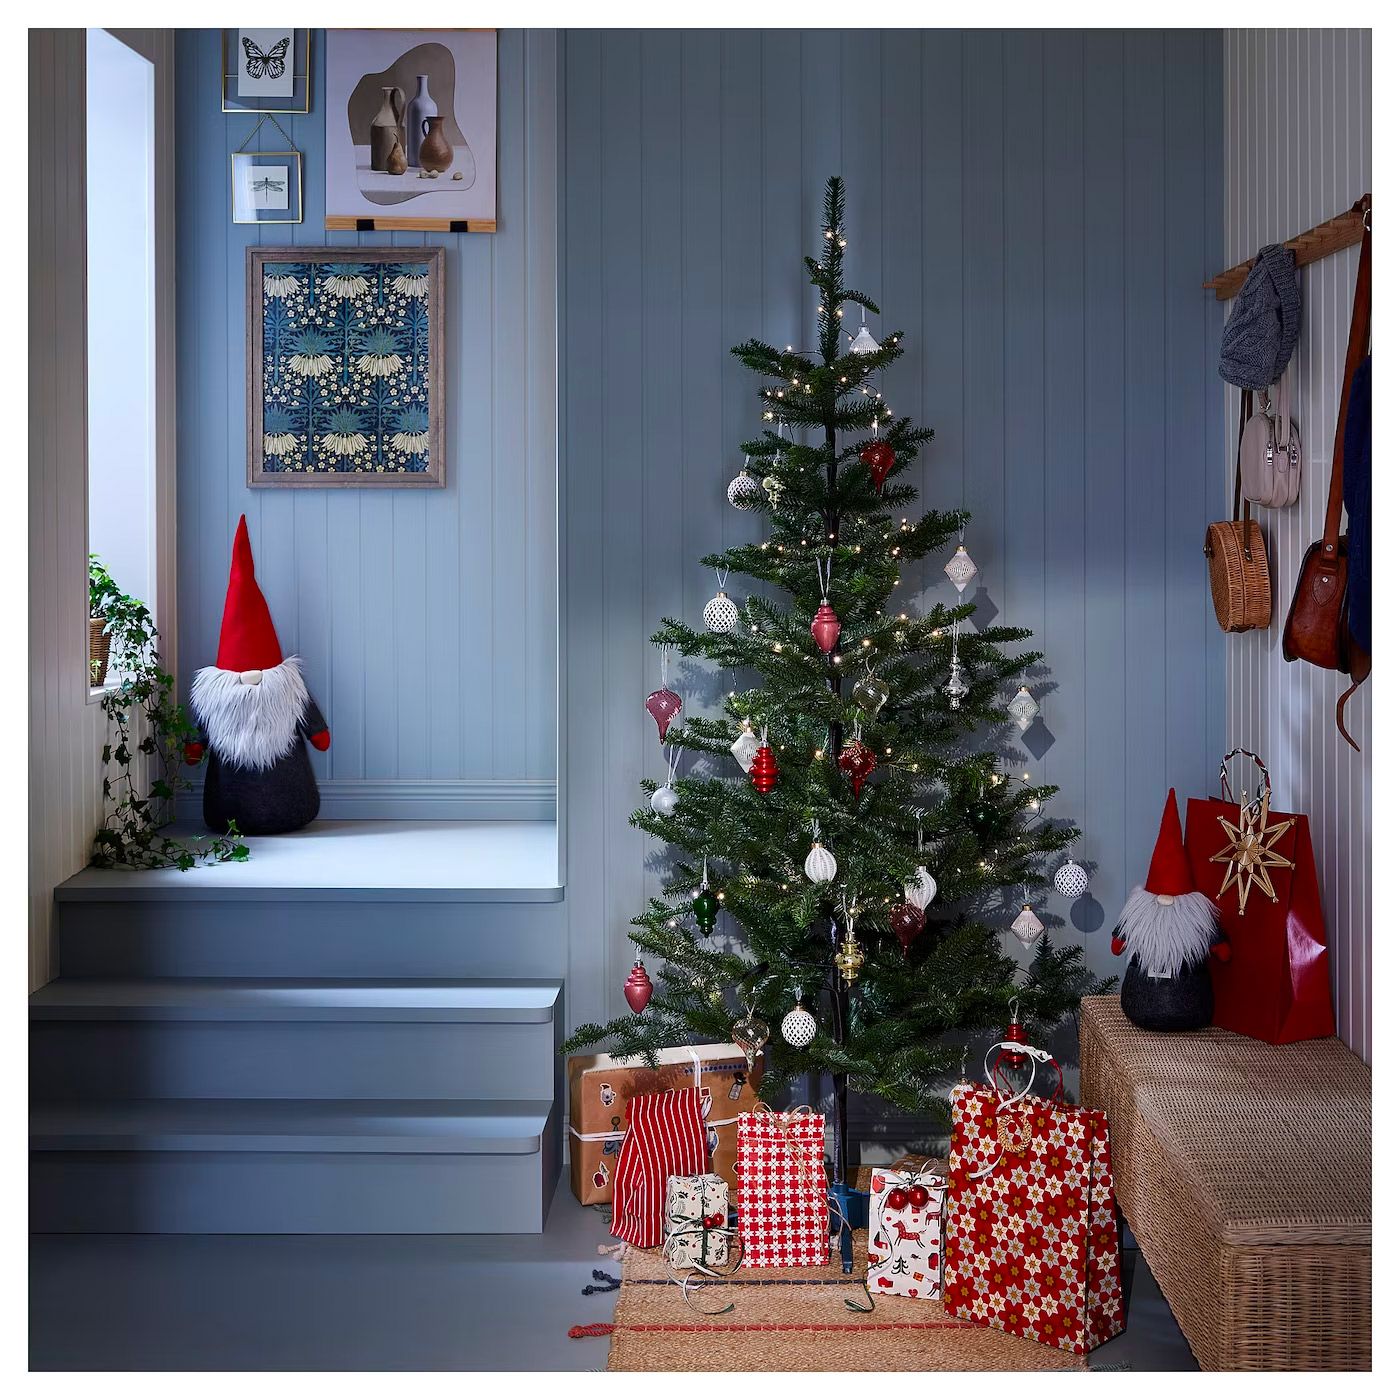 Cómo decorar el árbol de Navidad - Blog de Muebles baratos